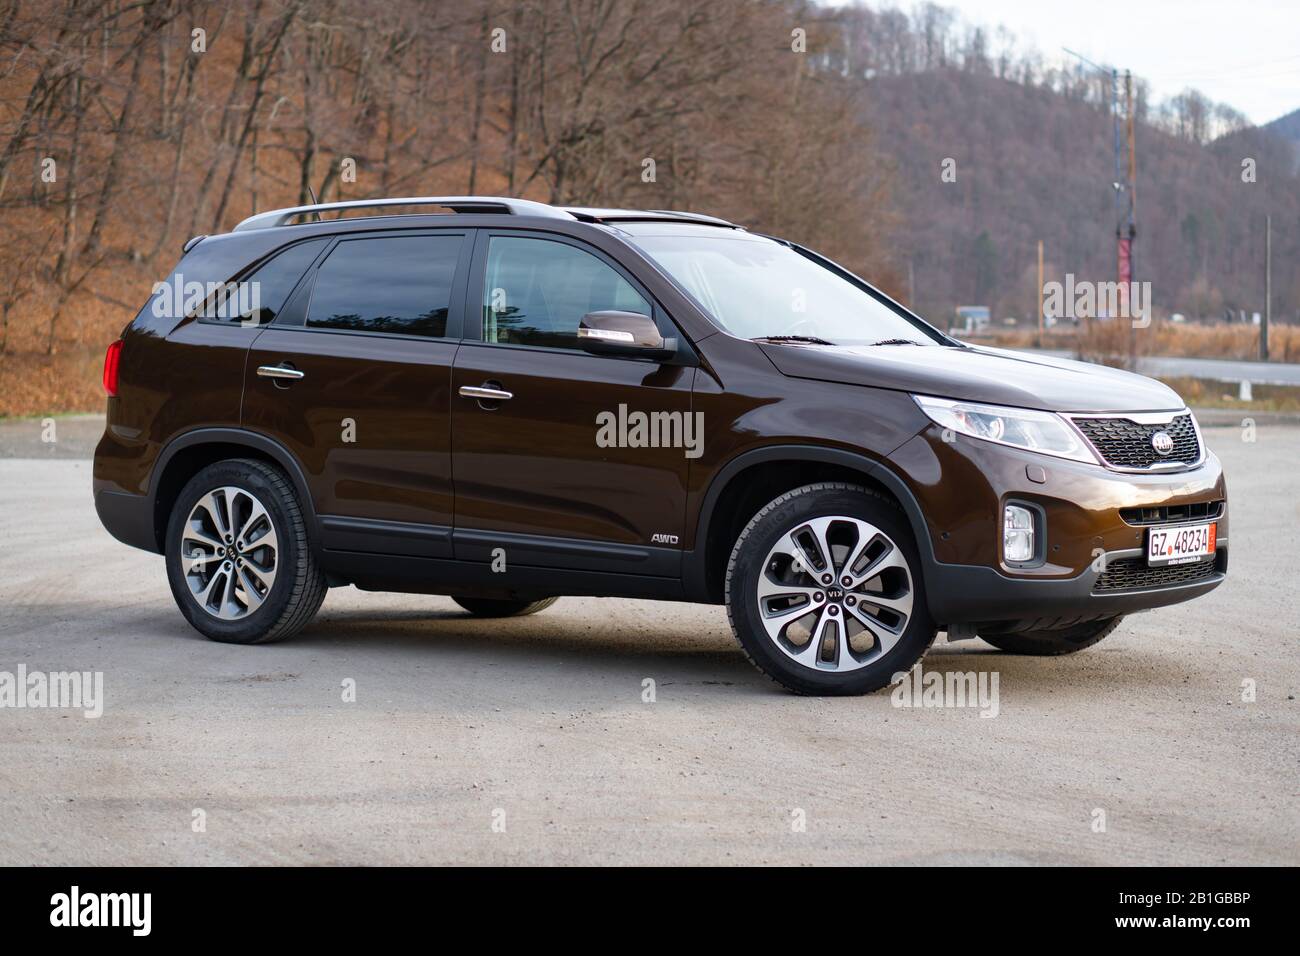 Équipement Kia Sorento Platinum, modèle facelift, année 2014, couleur métallique marron moca. 4x4 suv familial isolé dans un parking vide, séance photo Banque D'Images